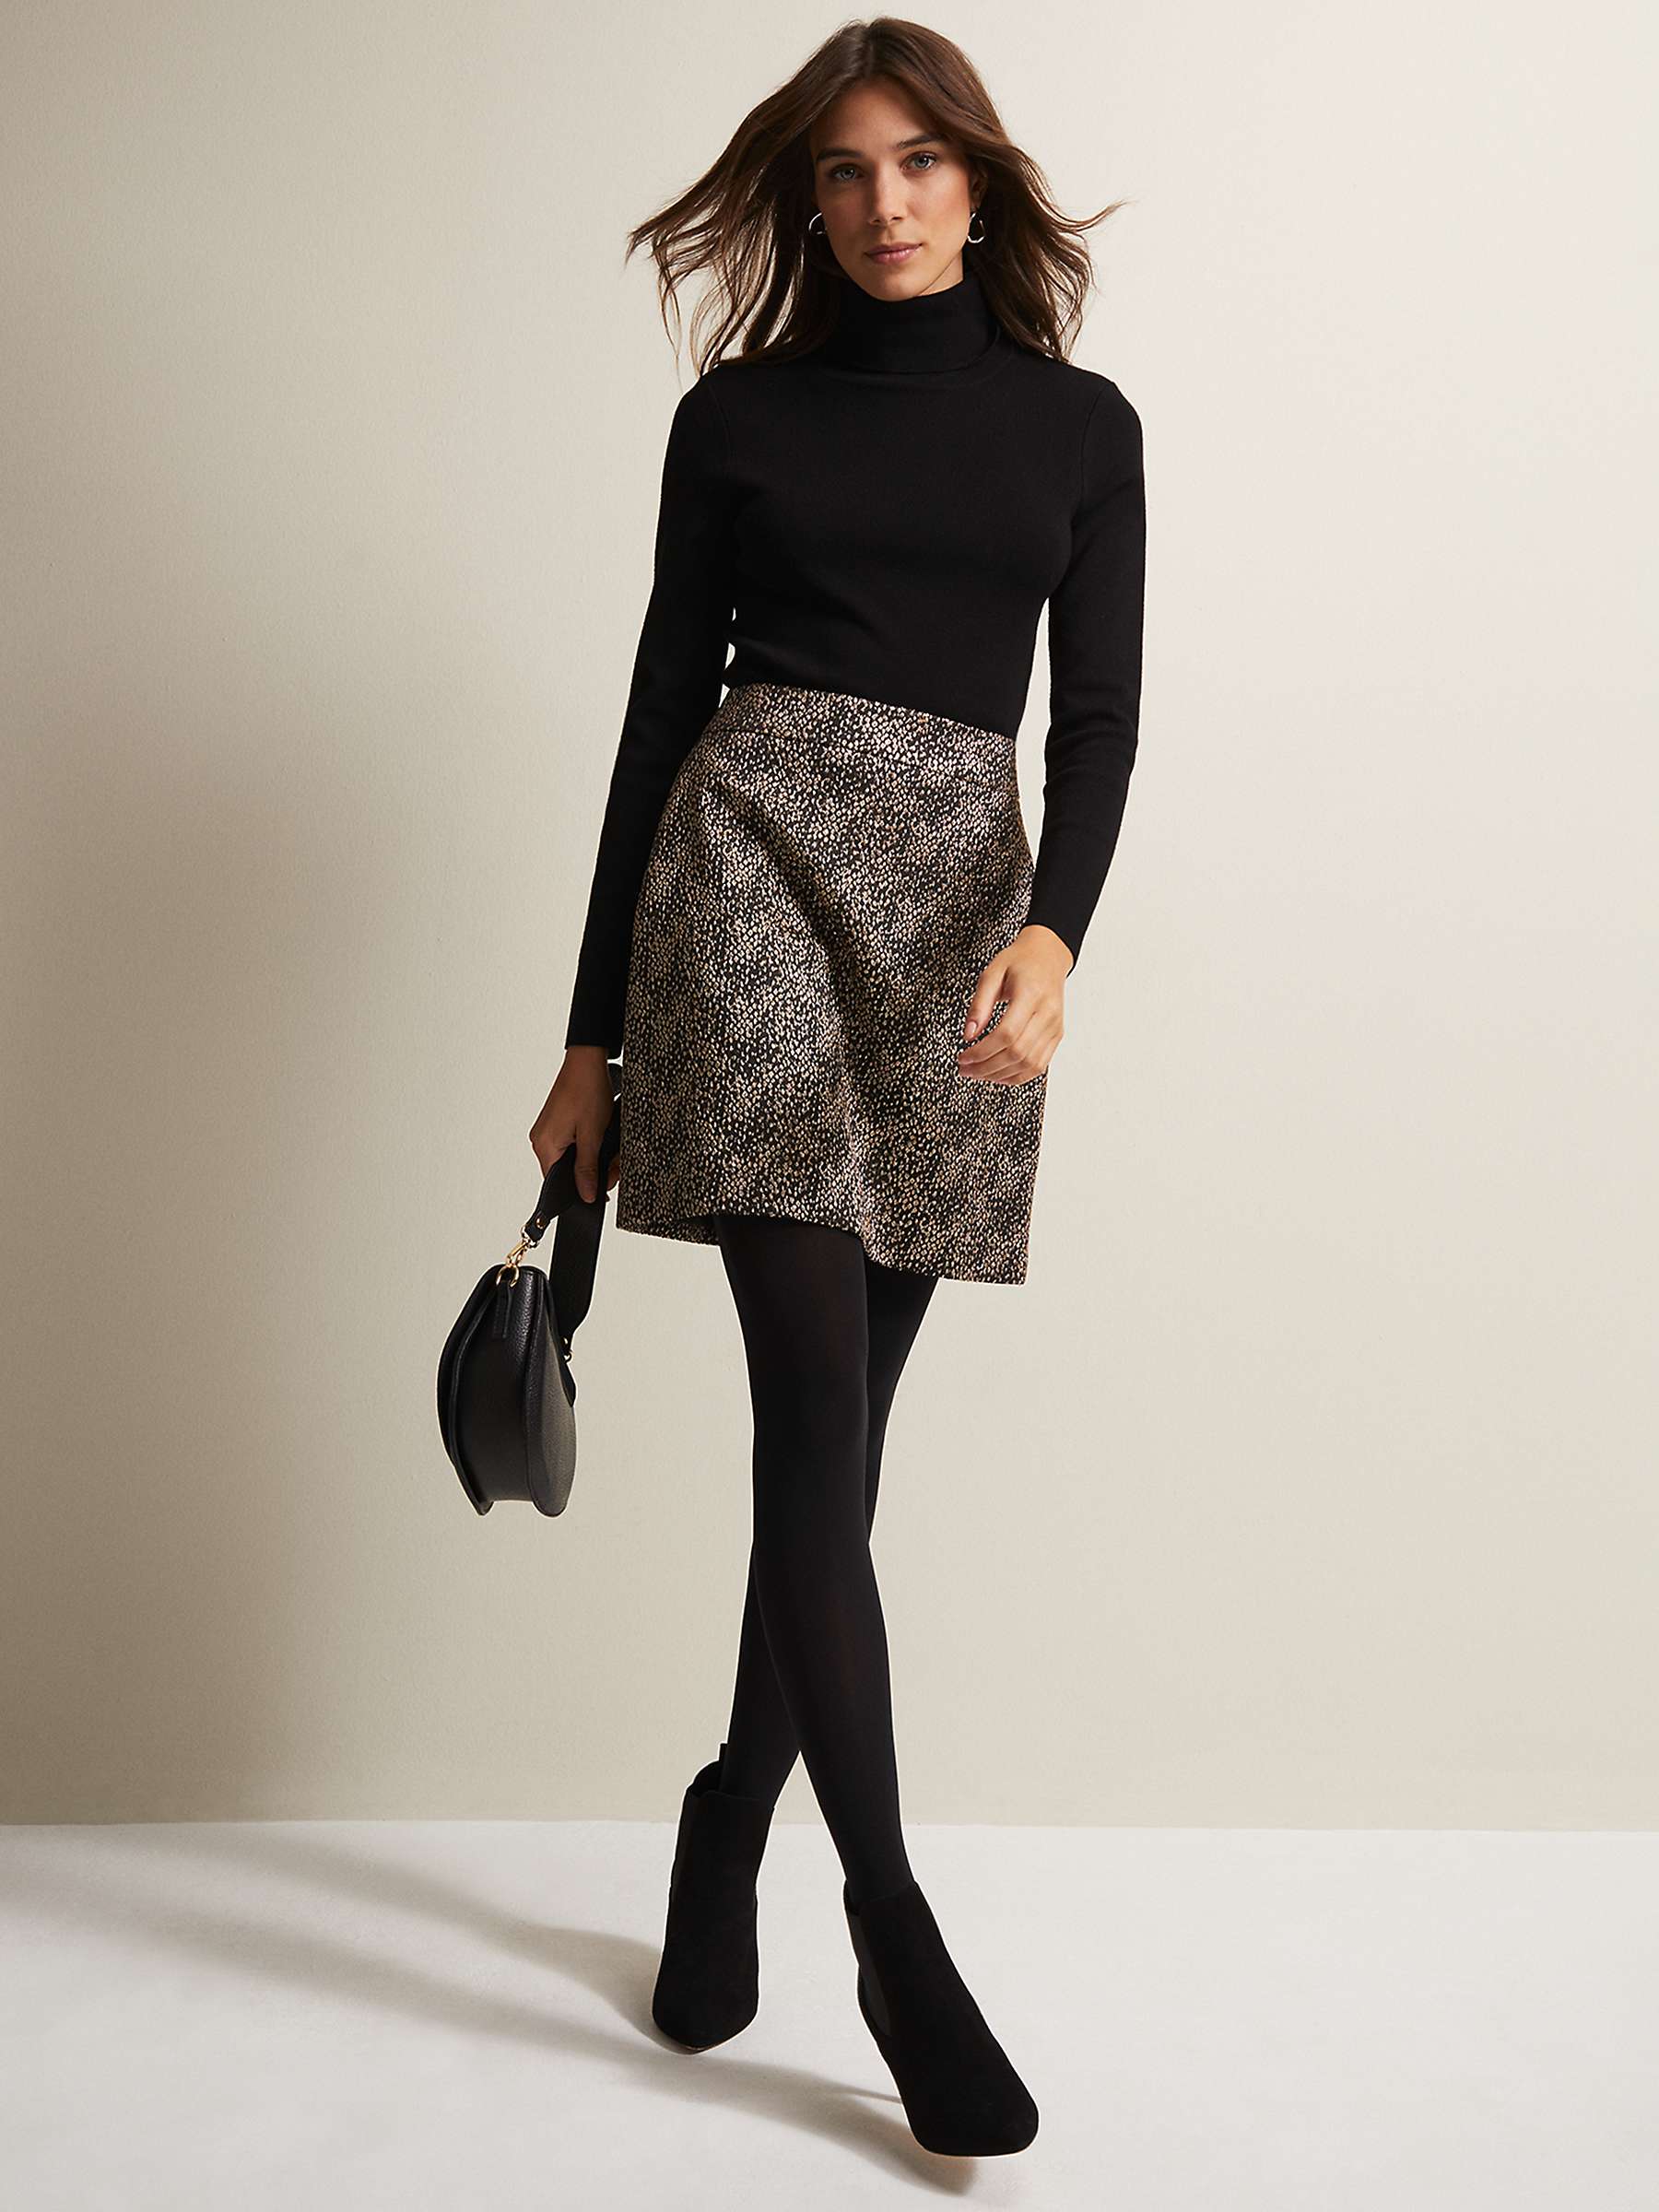 Buy Phase Eight Kilah Jacquard Mini Skirt, Gold Online at johnlewis.com